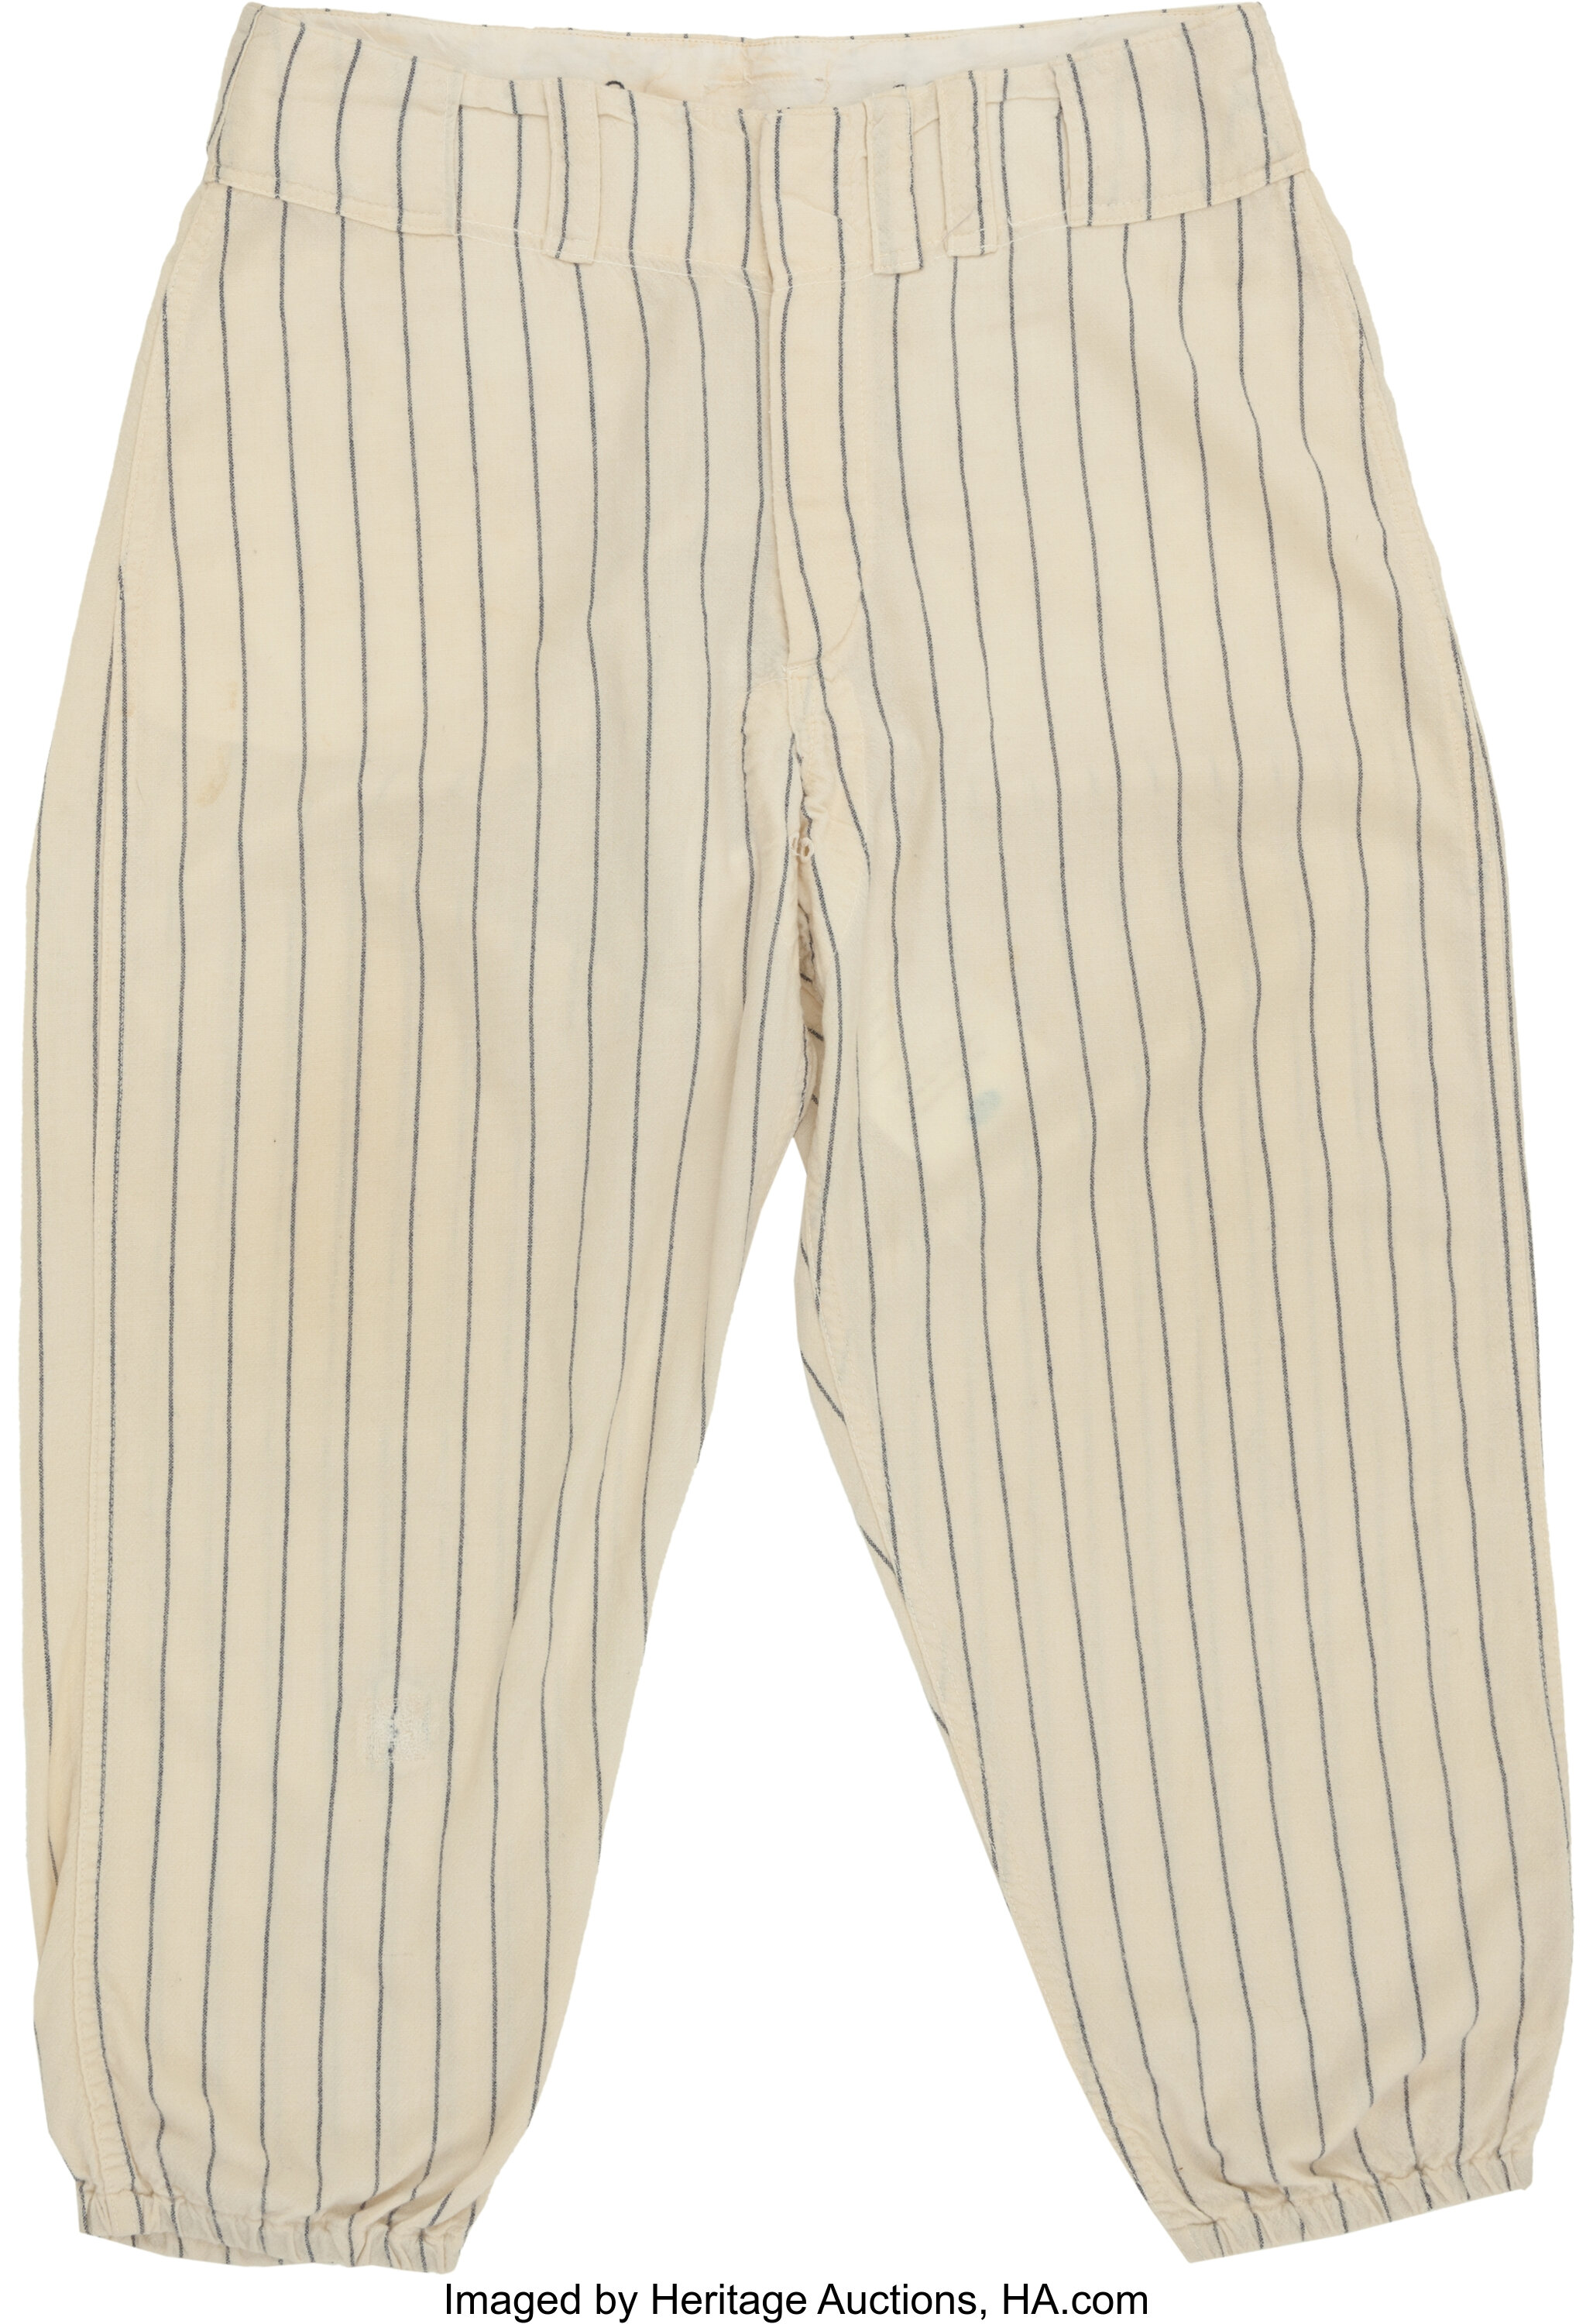 Yankees Game Used Home Pinstripe Pants Memorabilia